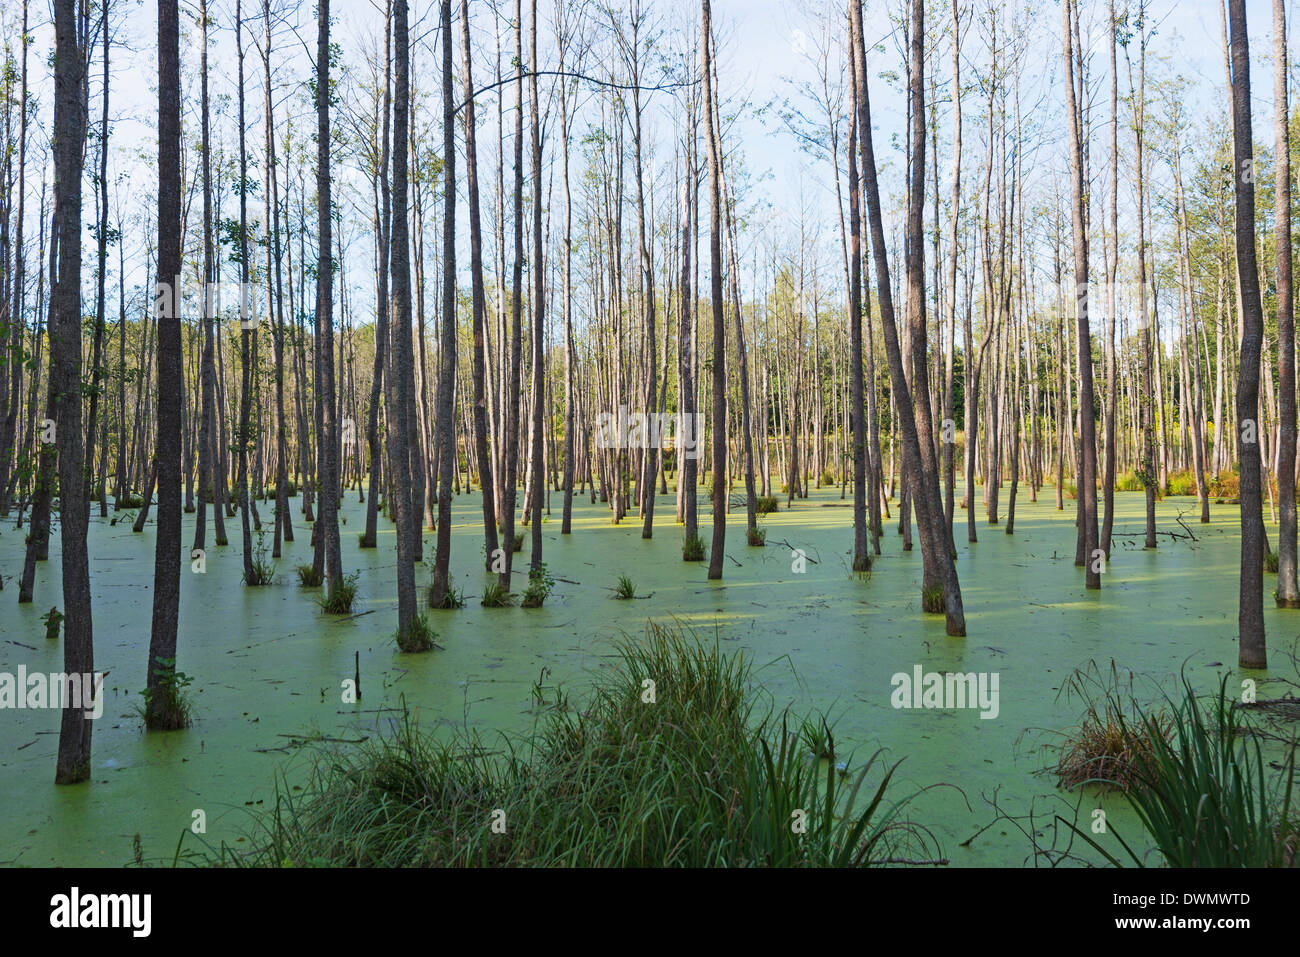 Swamp land forest, Warmia, Poland, Europe Stock Photo